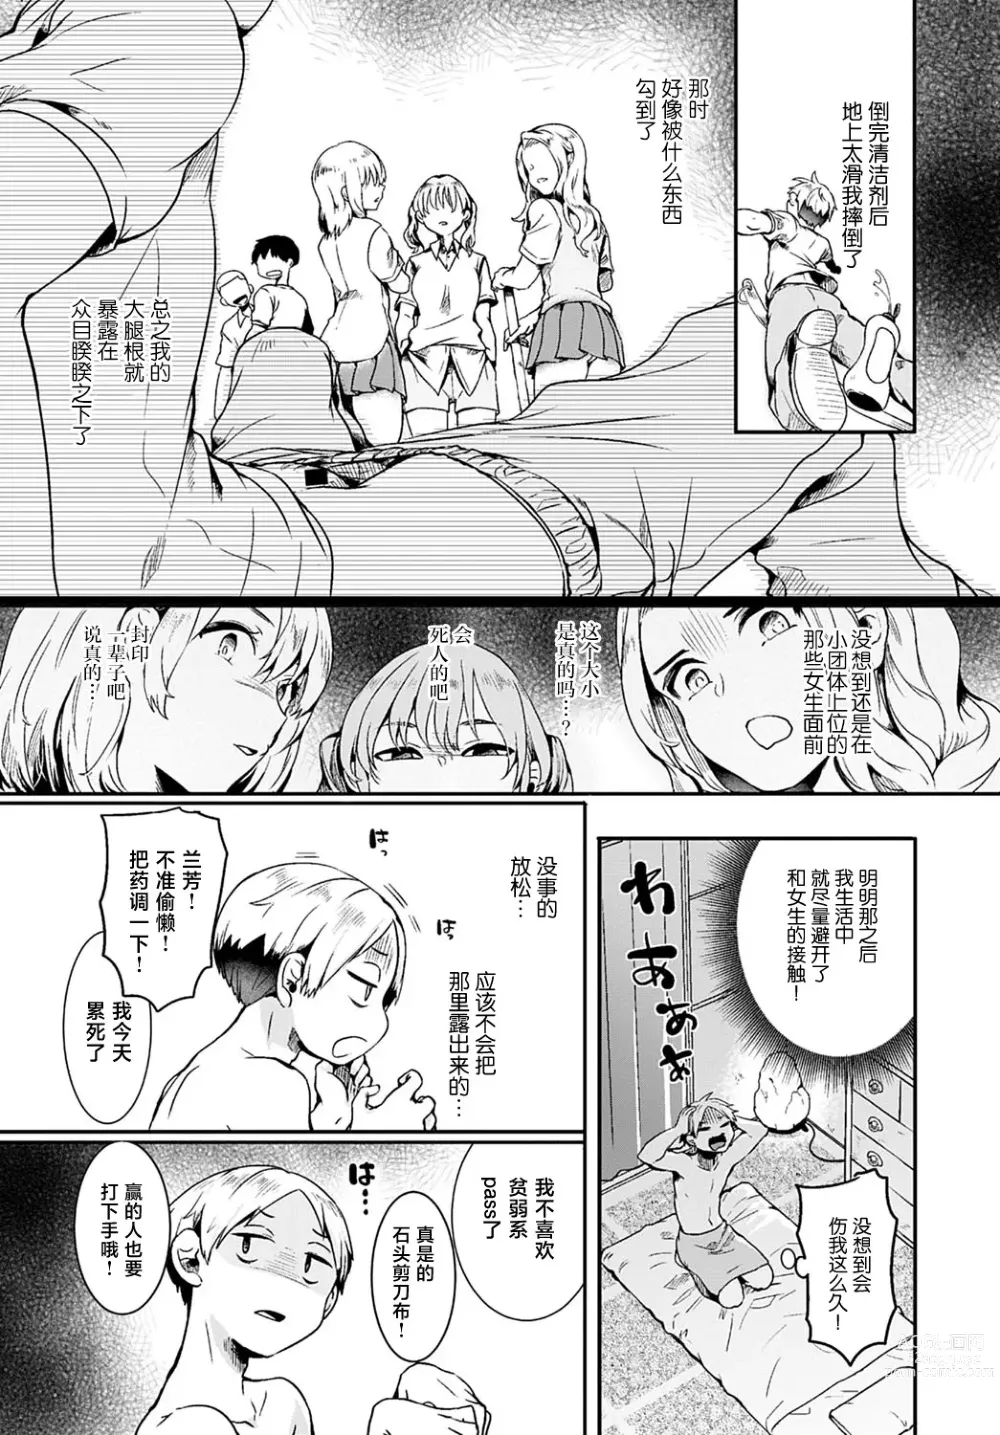 Page 3 of manga 小区里的男士美容店